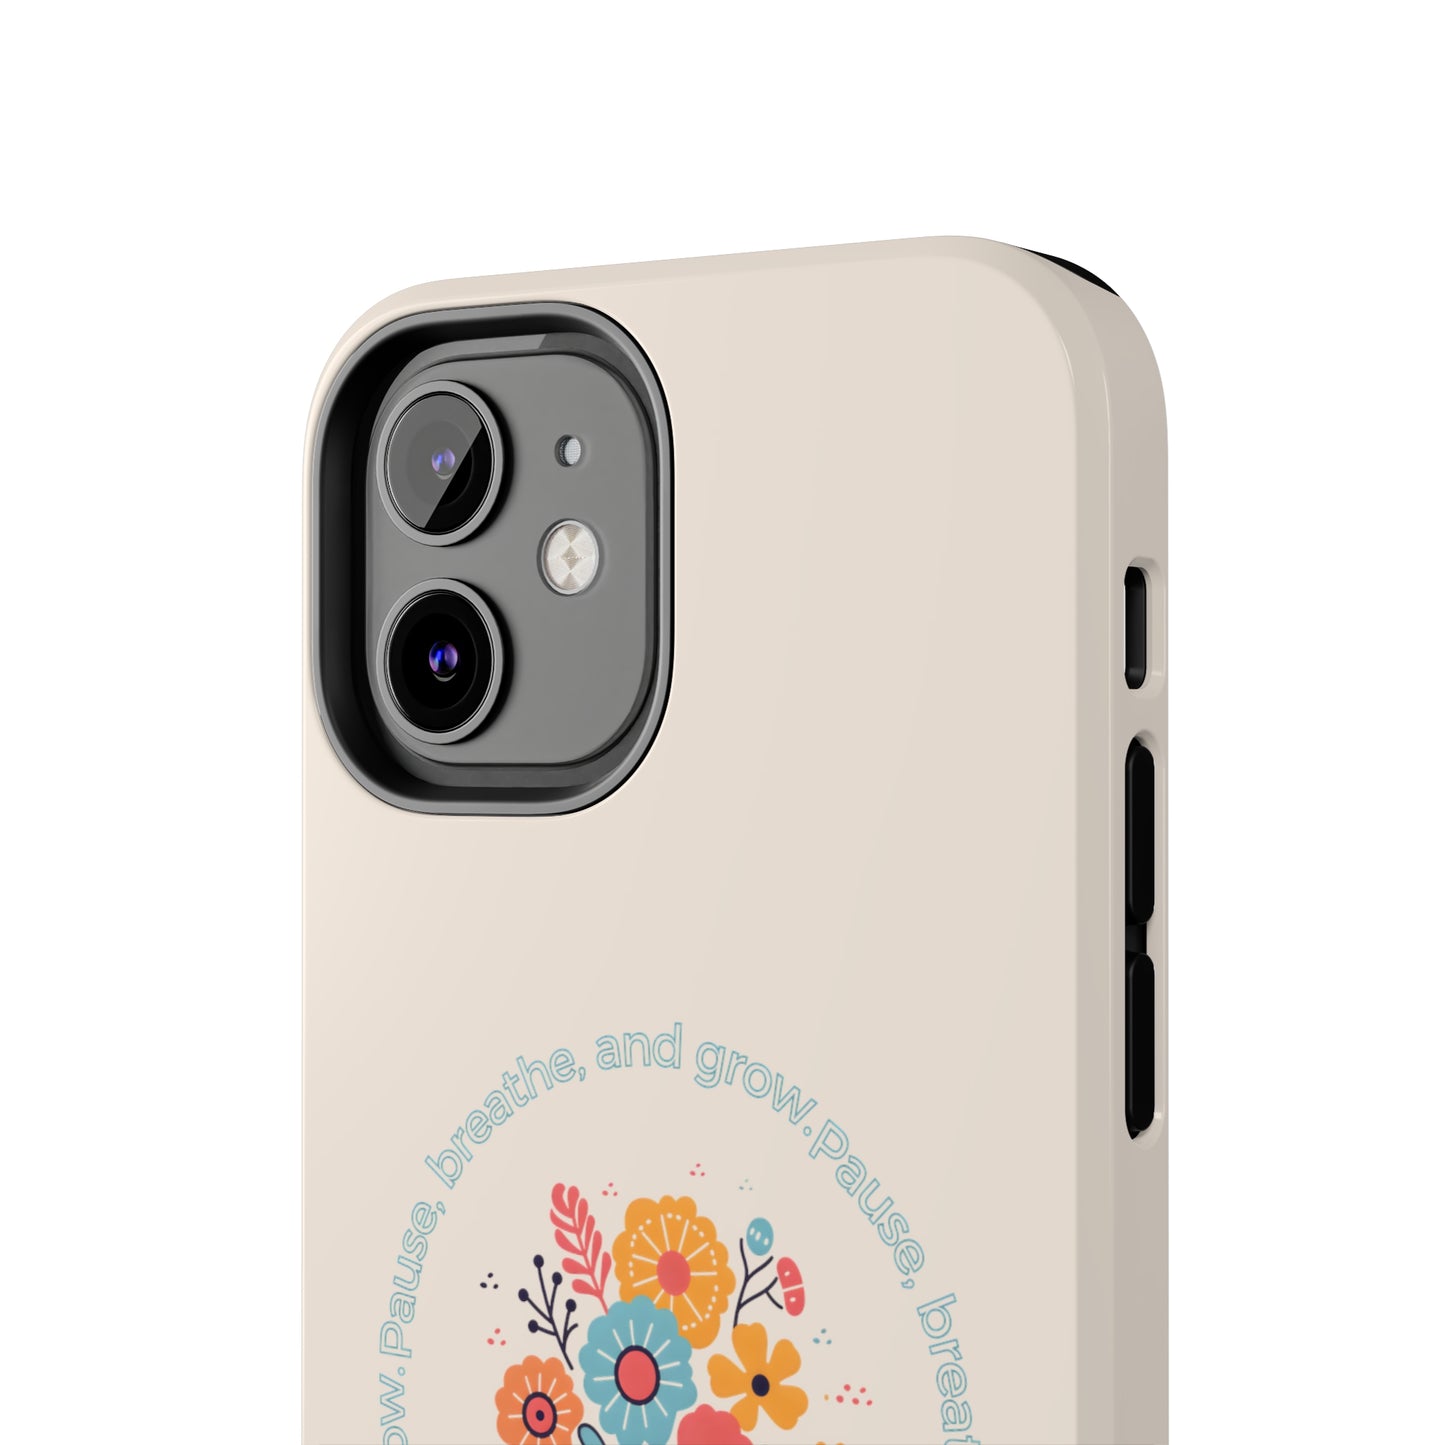 Pausar, respirar y hacer crecer el diseño floral Funda y vinilo para iPhone